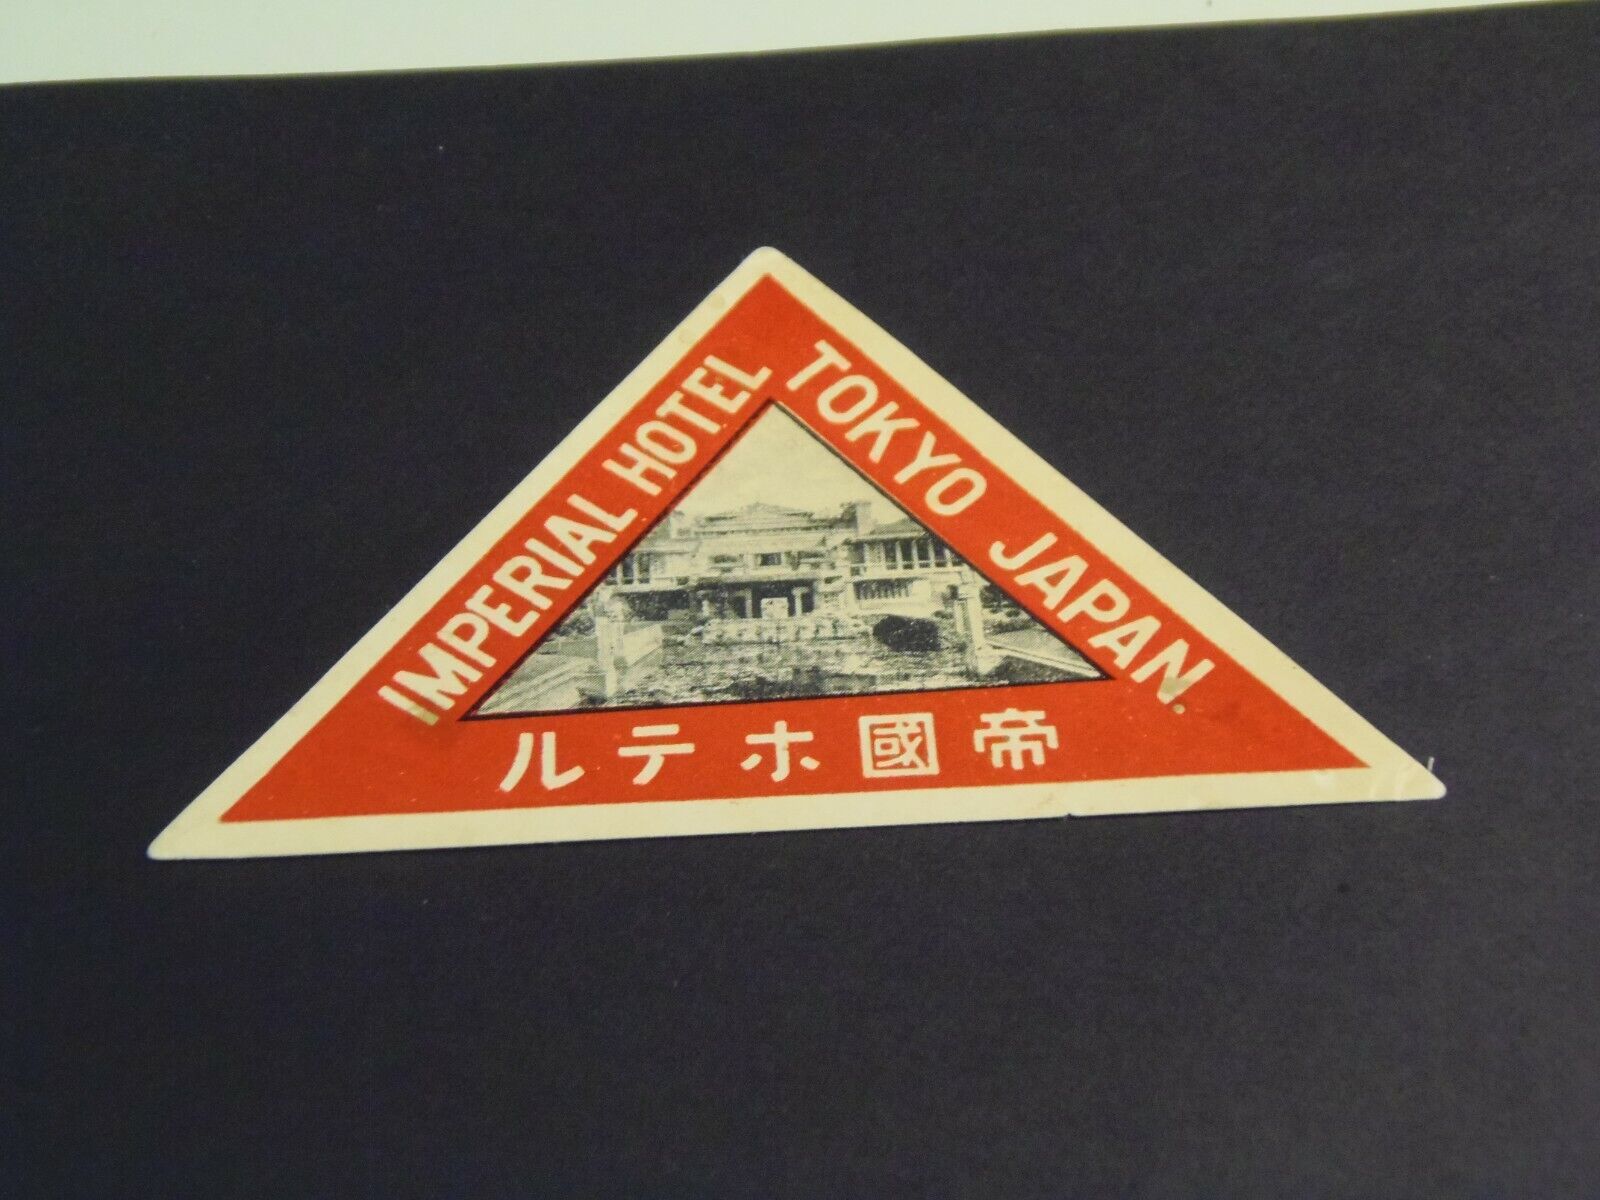 Imperial Hotel, Tokyo, Japan Vintage Luggage Label  02/14/2022